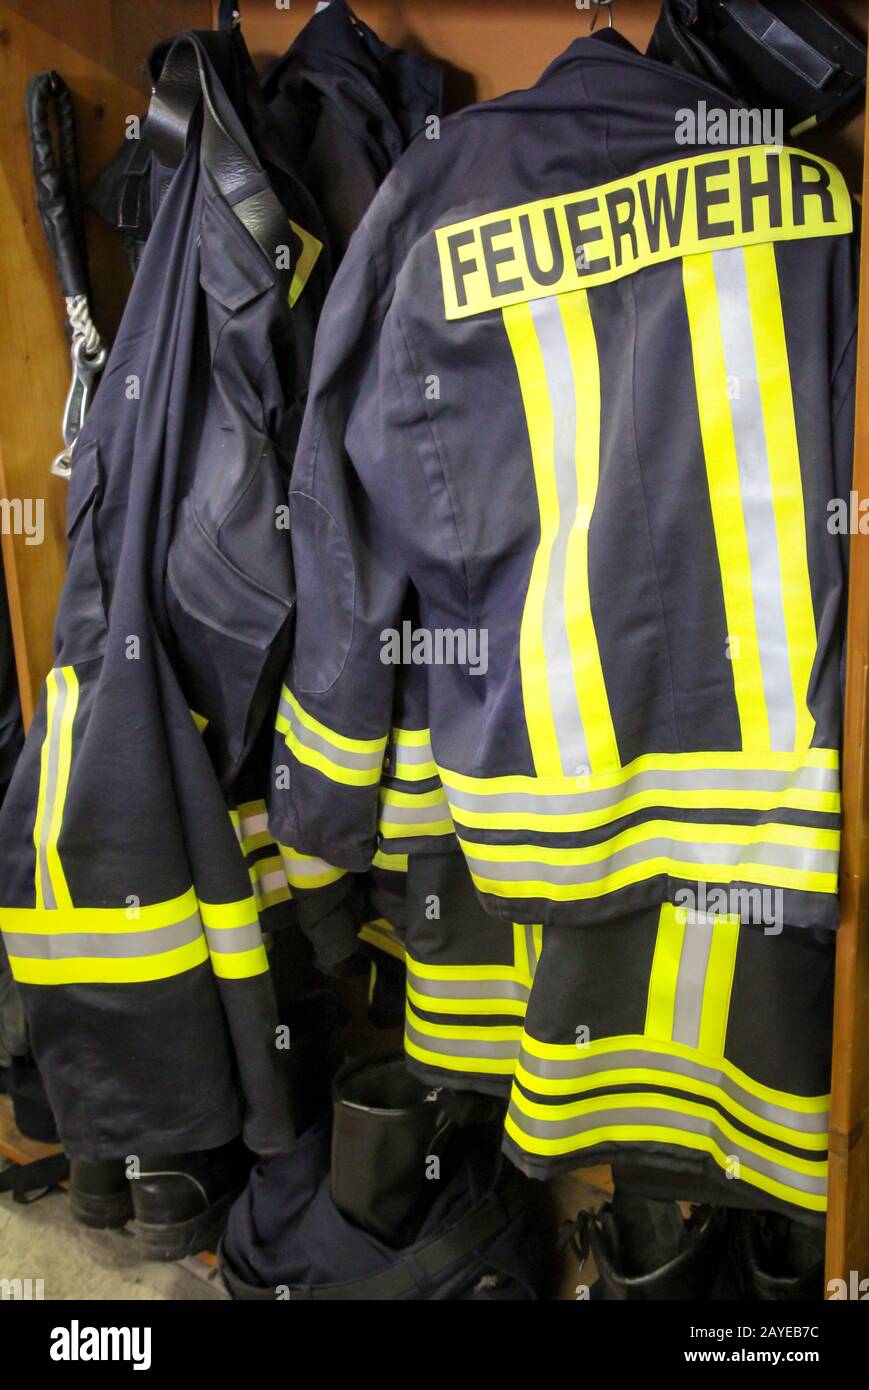 Vêtements, costumes et costumes de protection pour pompiers prêts à porter Banque D'Images